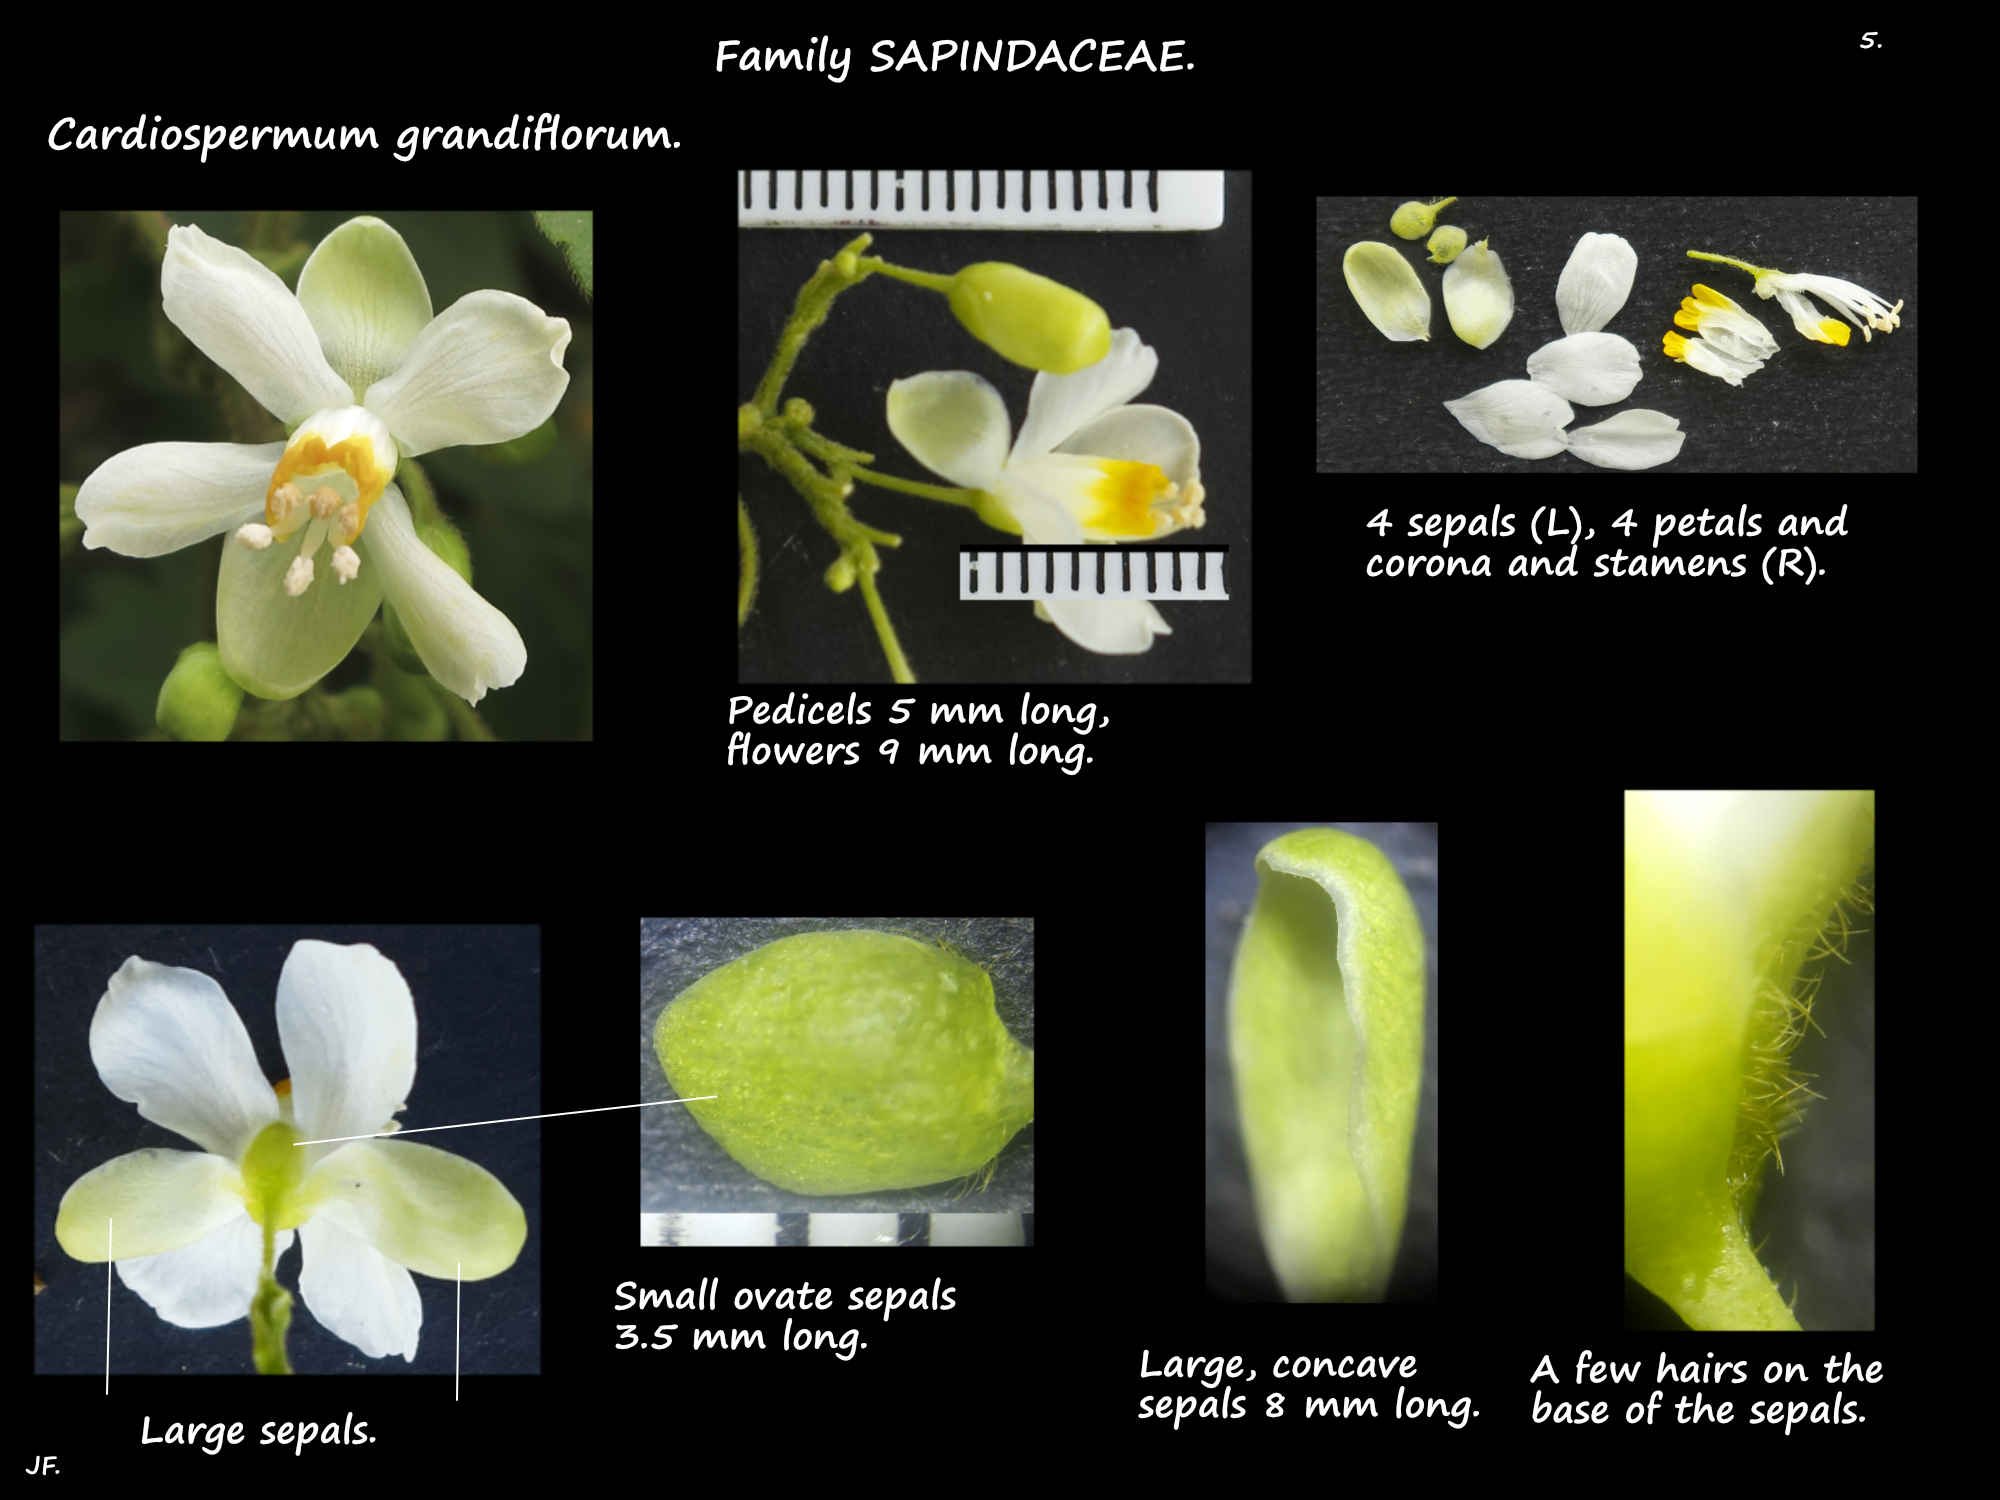 5 Cardiospermum grandiflorum flower & sepals